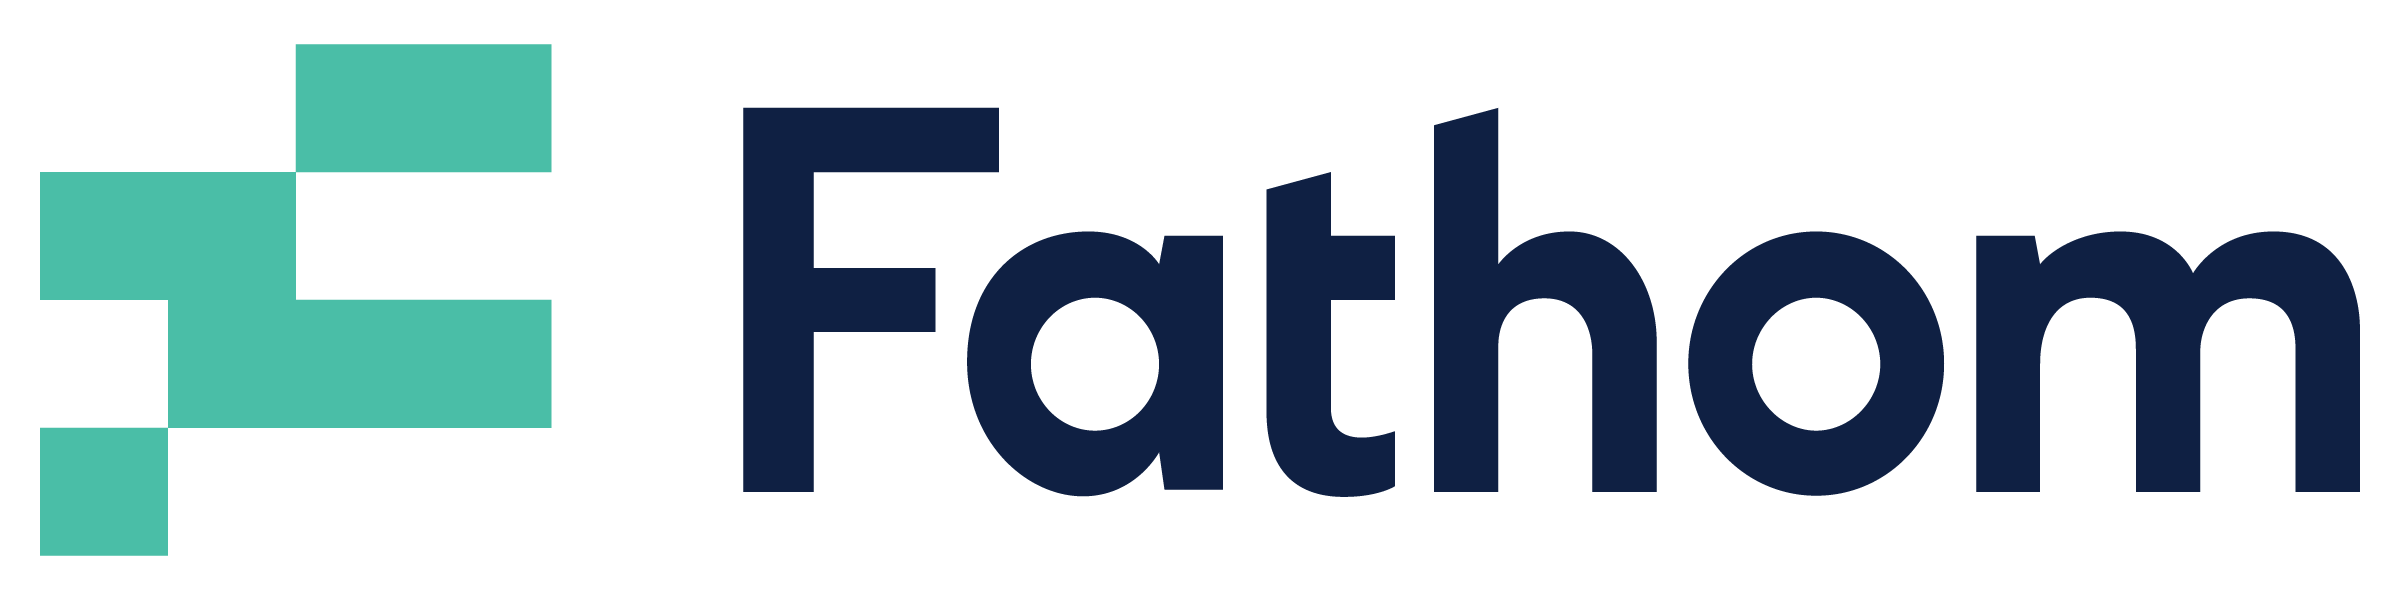 Fathom-logo